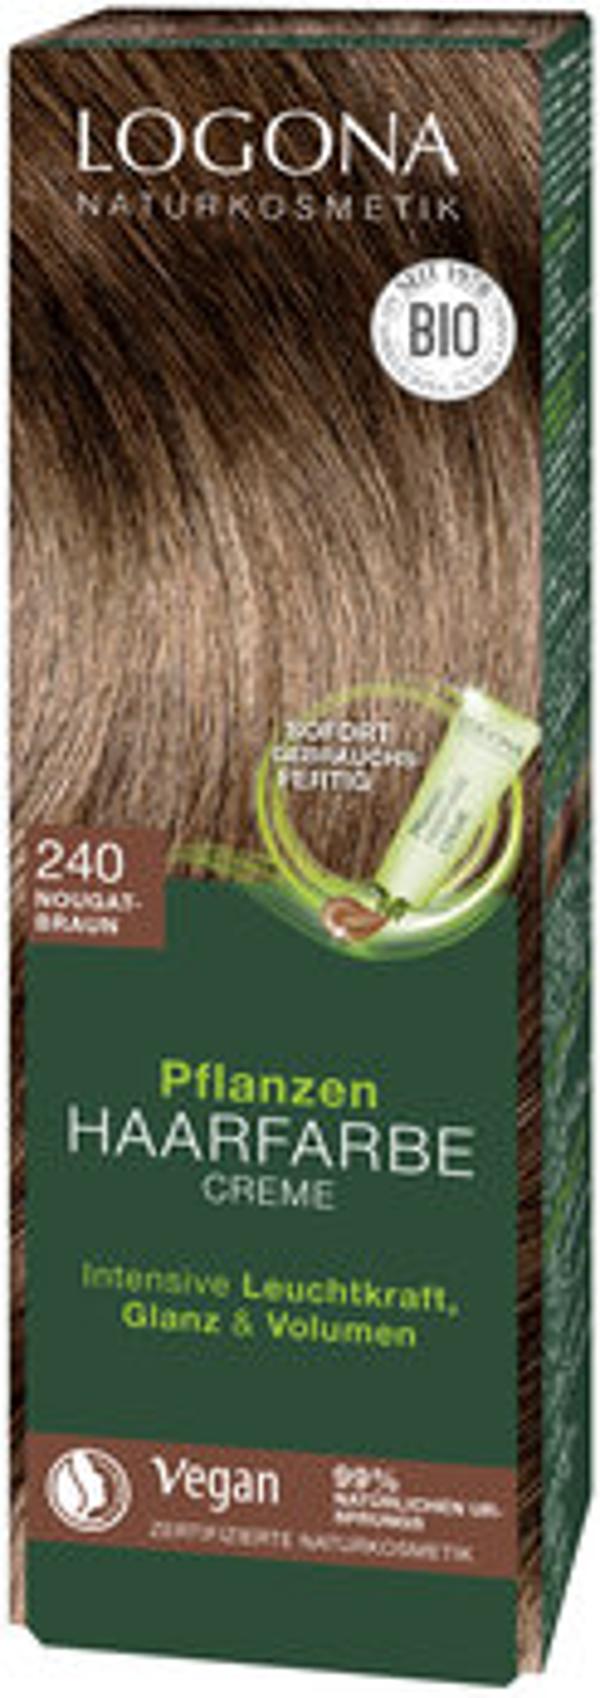 Produktfoto zu Pflanzen Haarfarbe 240 nougatbraun 150ml